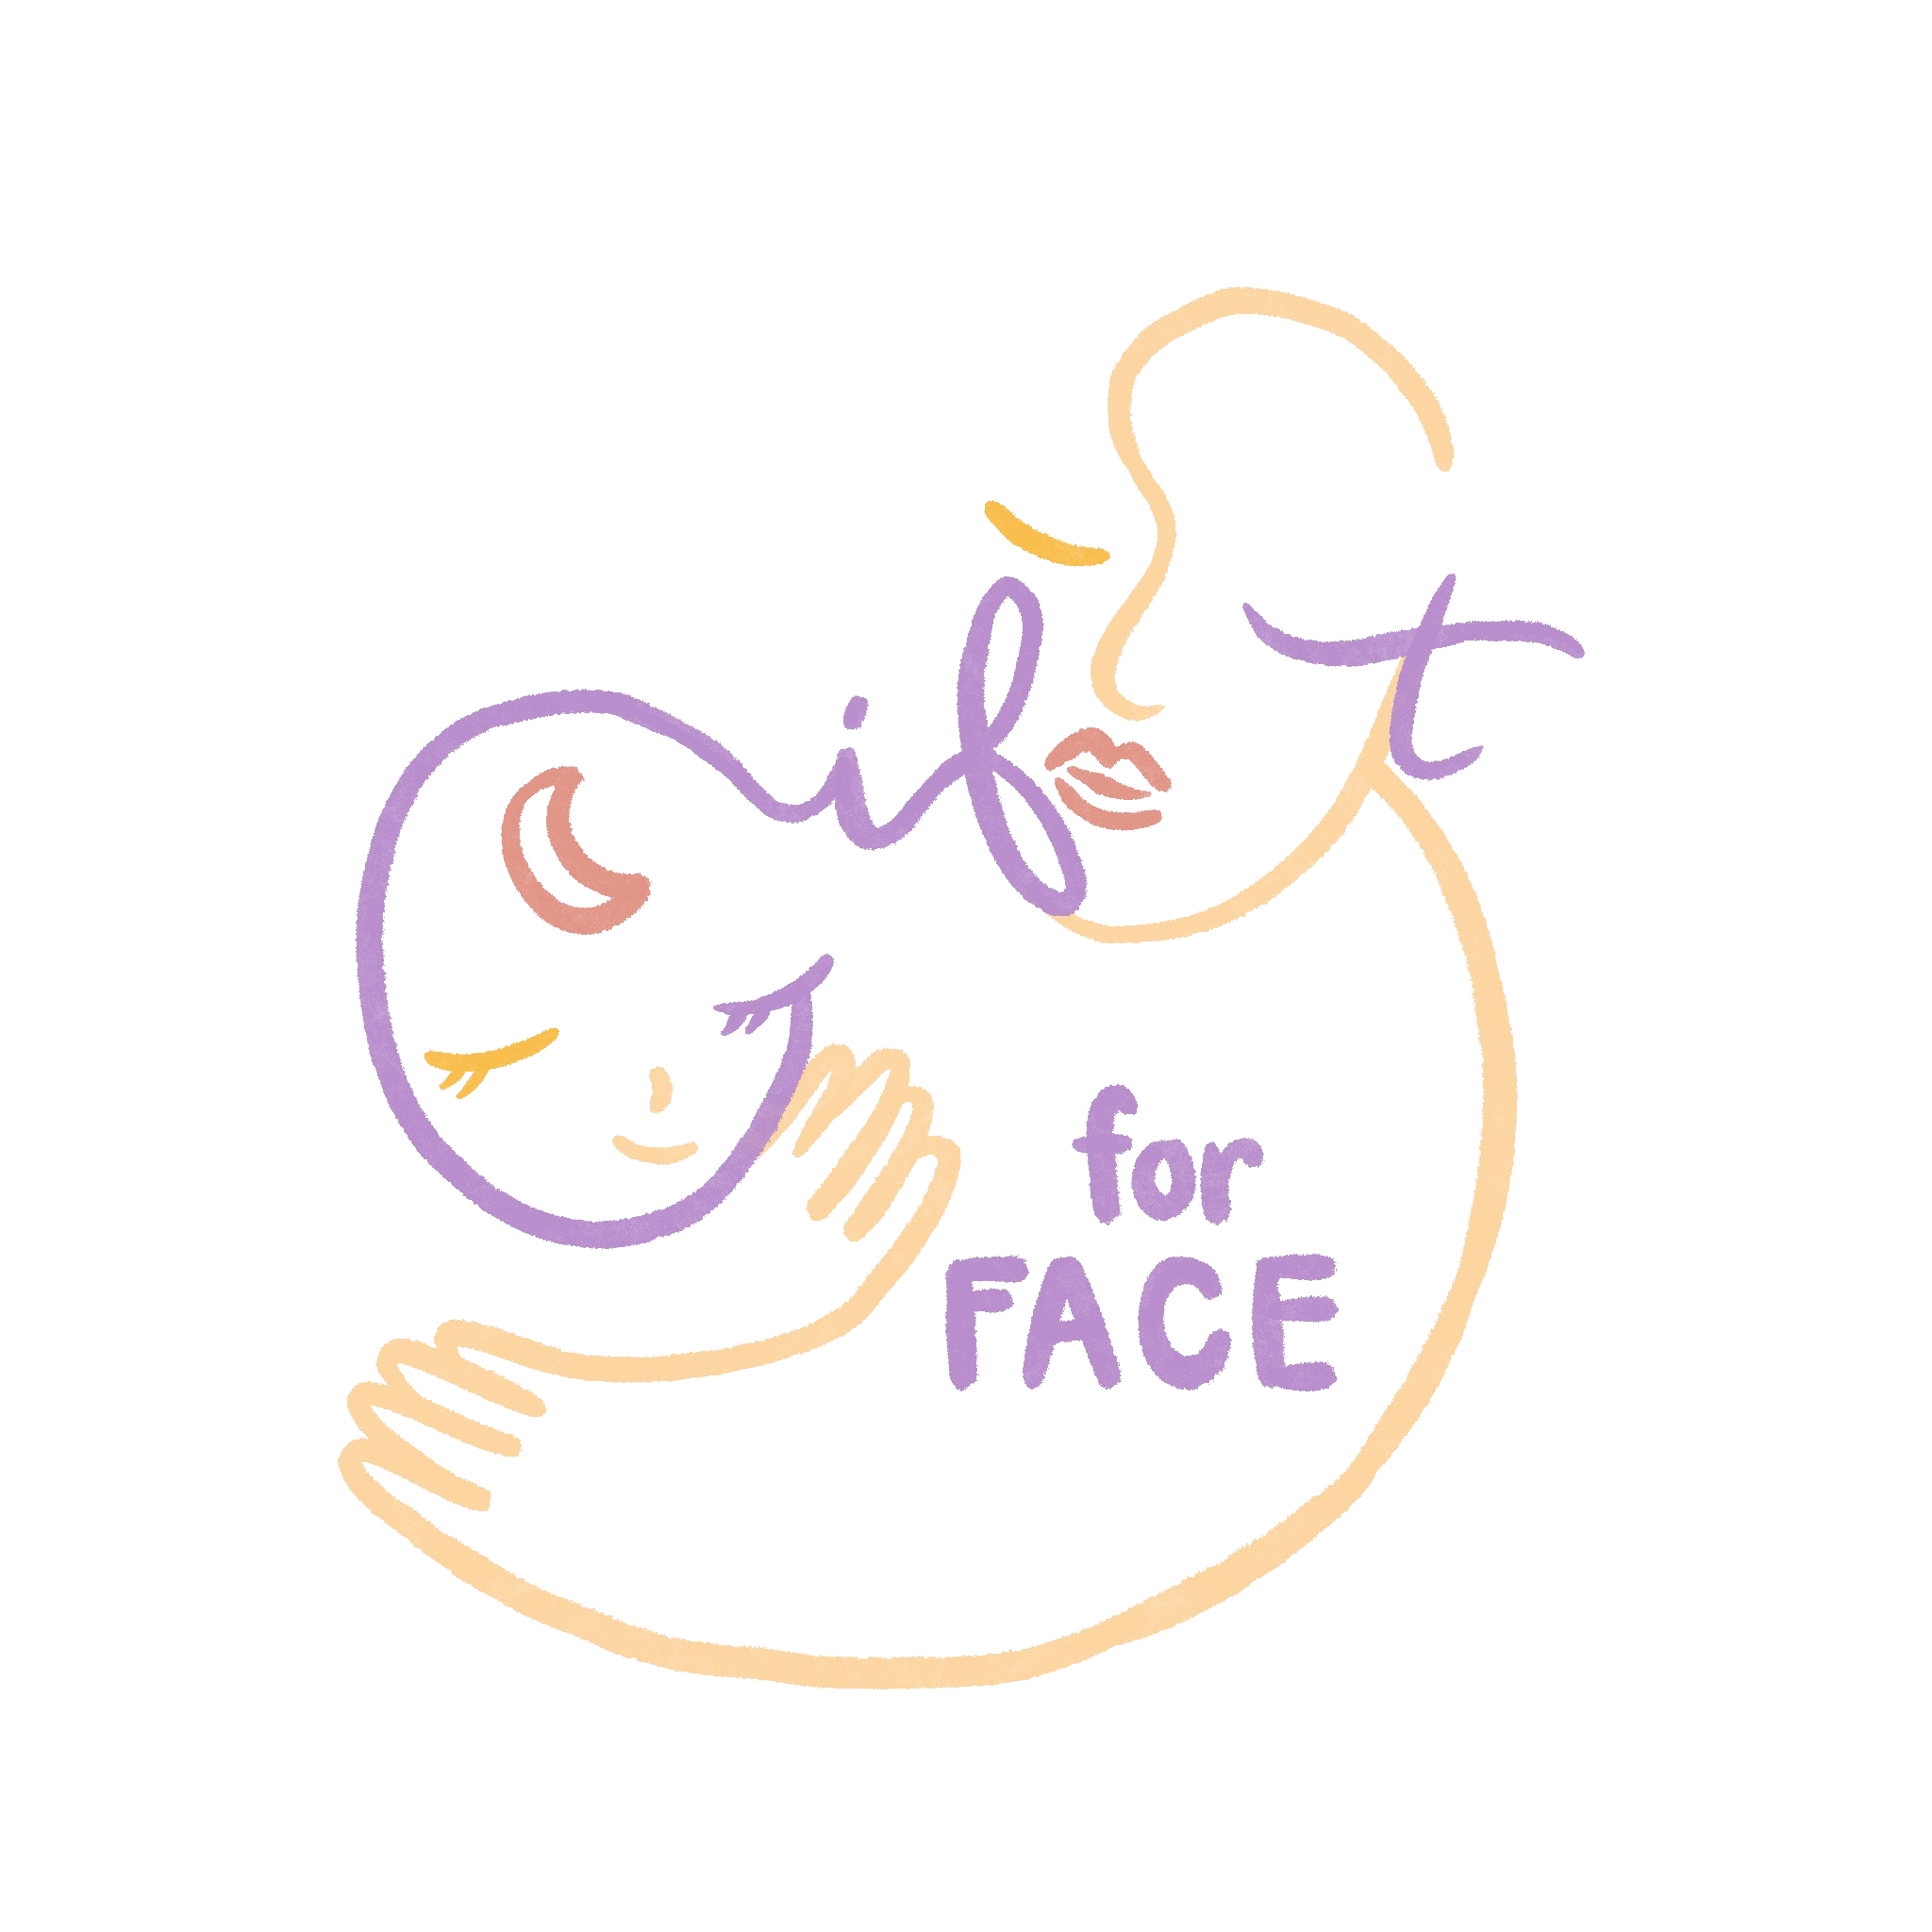 สัญลักษณ์โครงการ Gift For Face - เพื่อศูนย์สมเด็จพระเทพรัตน​ฯ​ แก้ไขความพิการบนใบหน้าและศีรษะ โรงพยาบาลจุฬาลงกรณ์​ สภากาชาดไทย